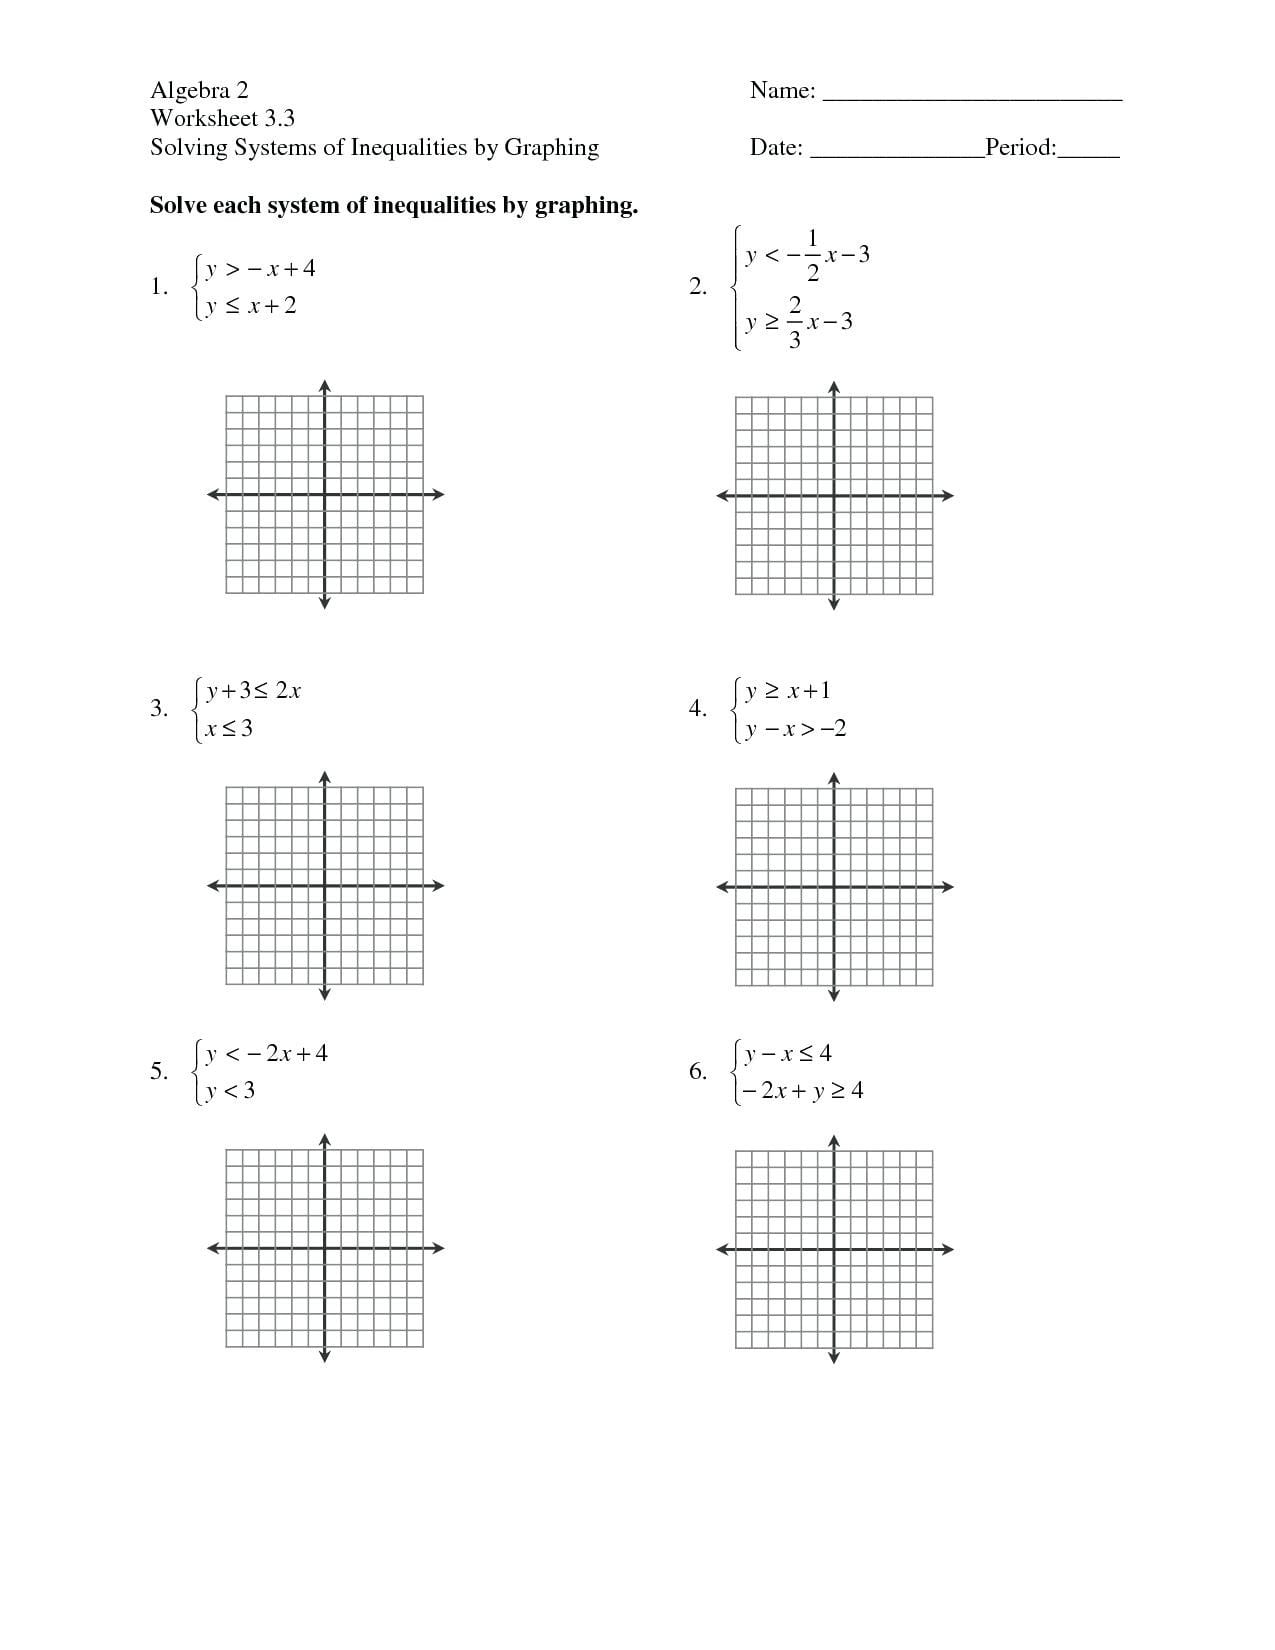 Linear Inequalities Word Problems Worksheet